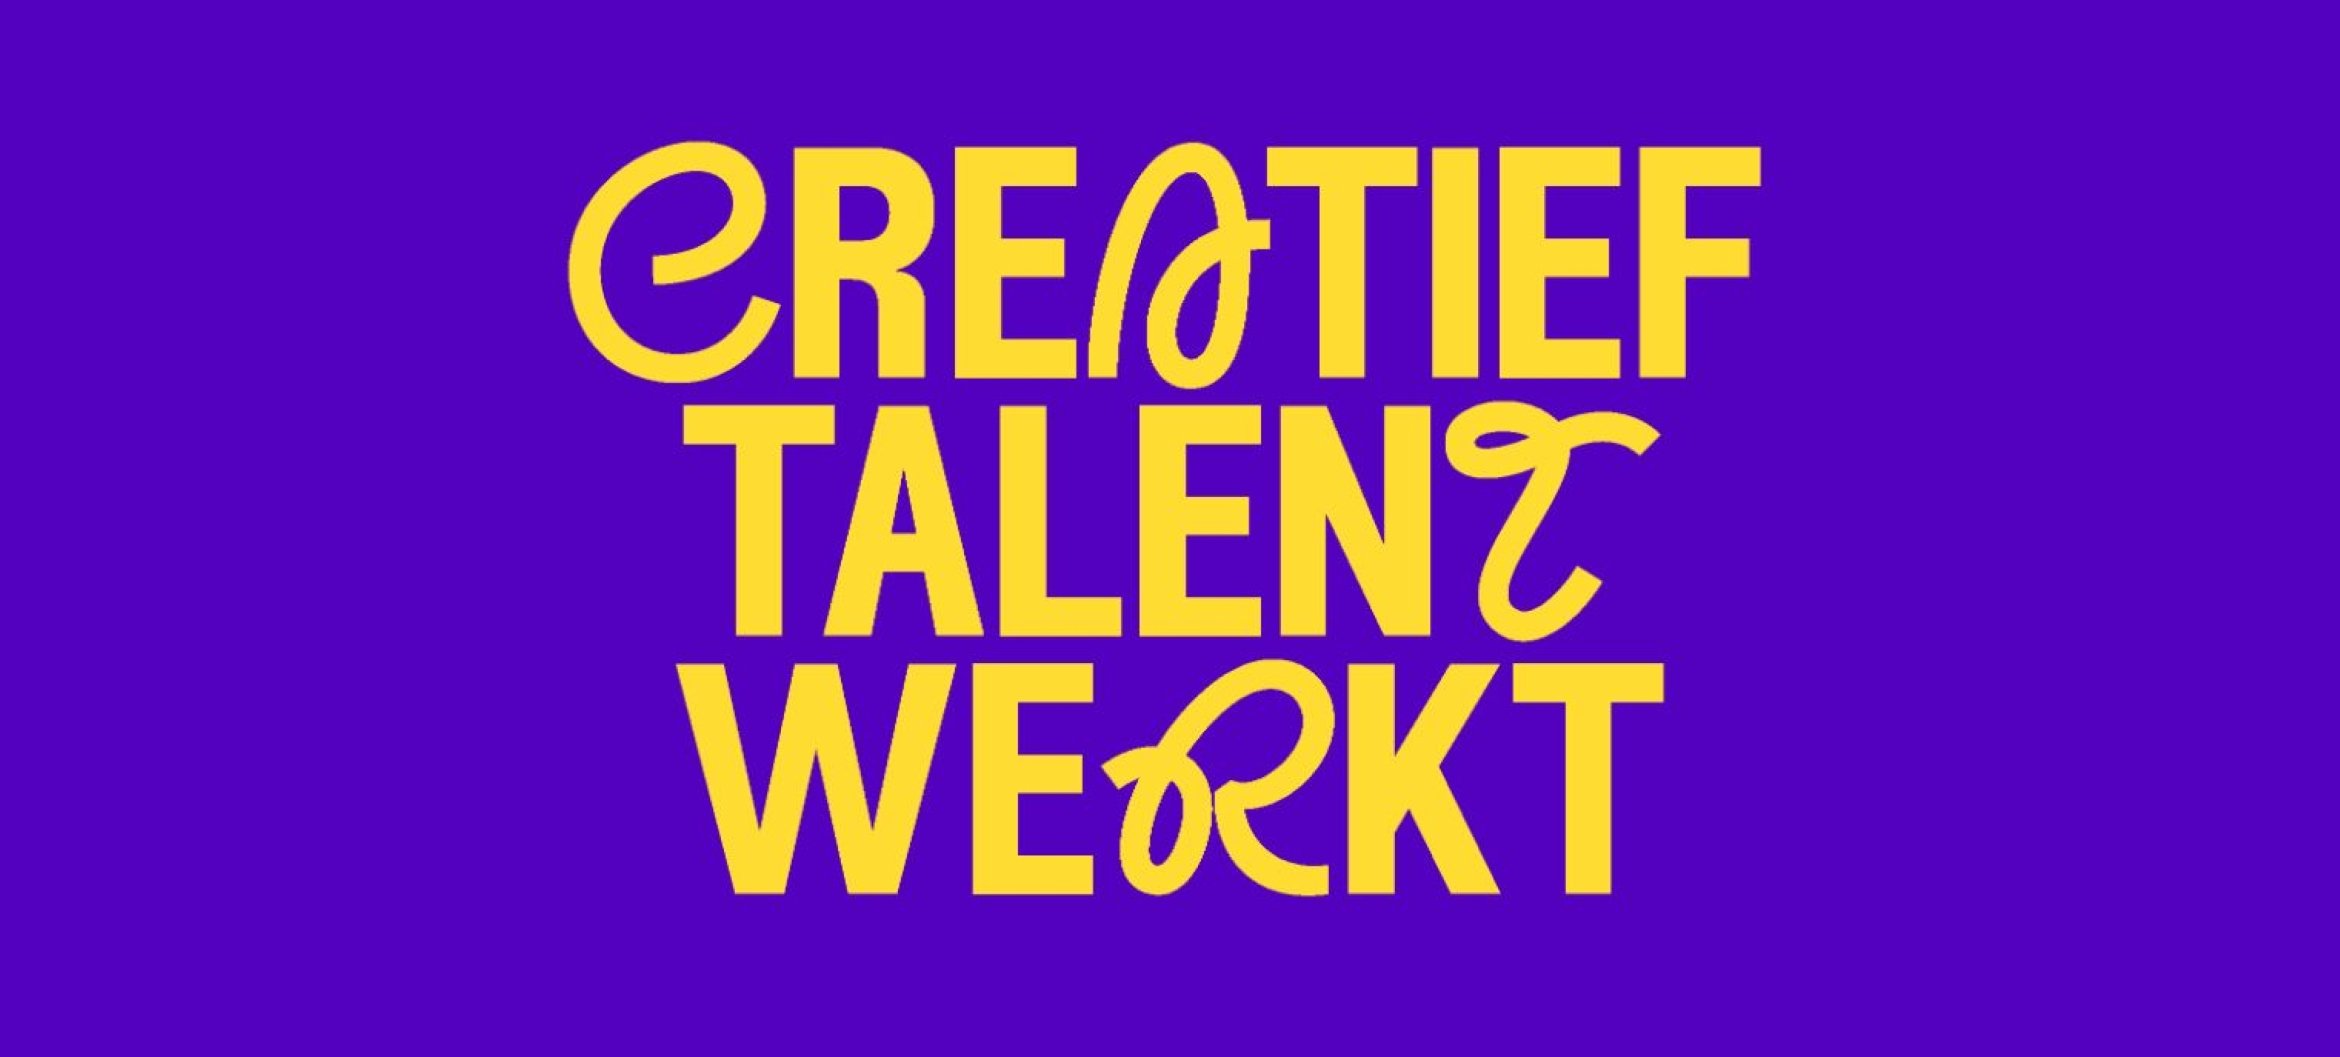 Creatief Talent Werkt is een online magazine de manieren waarop MKB en creatieve professionals en studenten kunnen samenwerken.